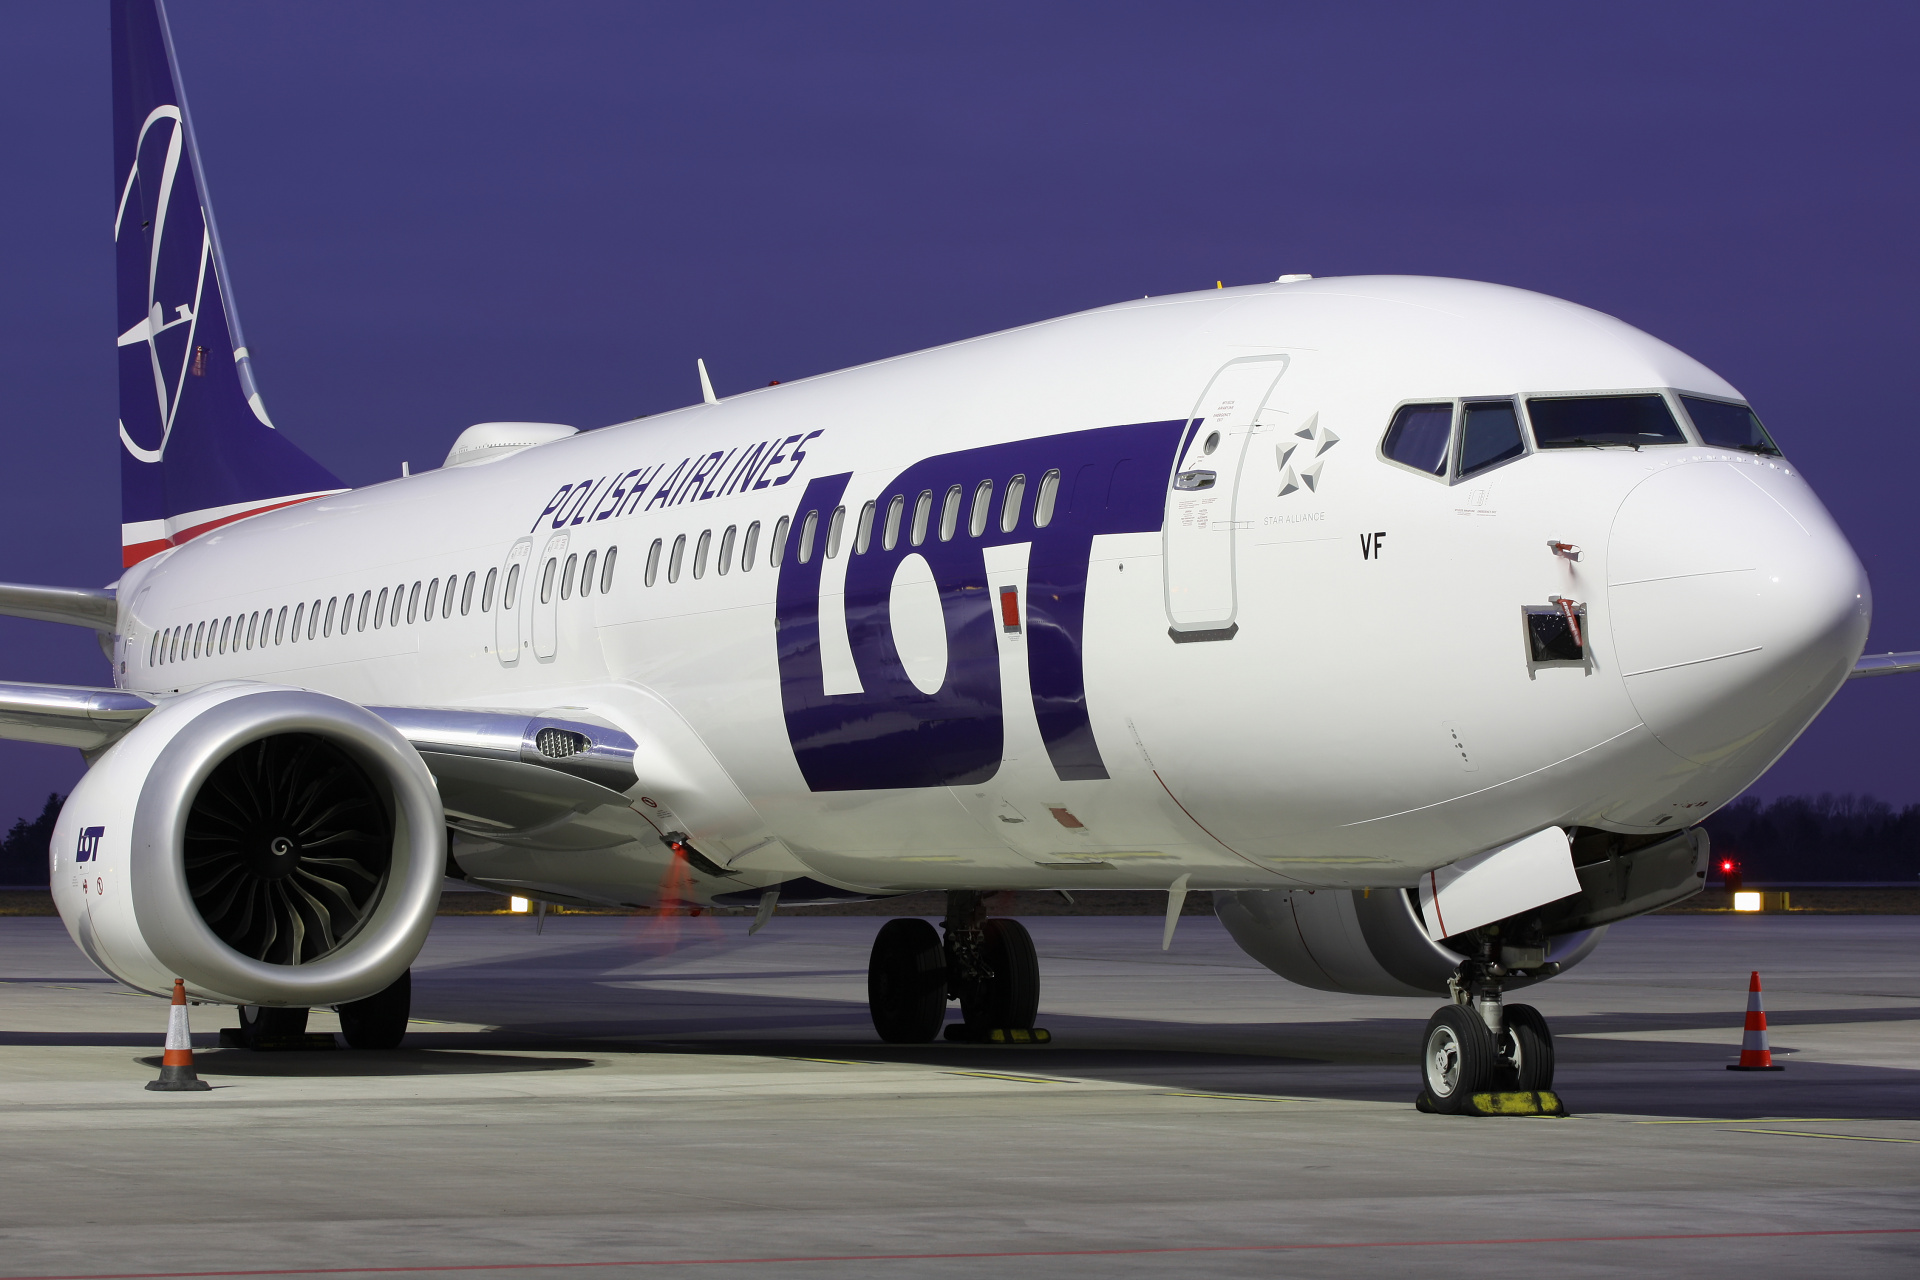 SP-LVF (Samoloty » Spotting na EPWA » Boeing 737-8 MAX » Polskie Linie Lotnicze LOT)